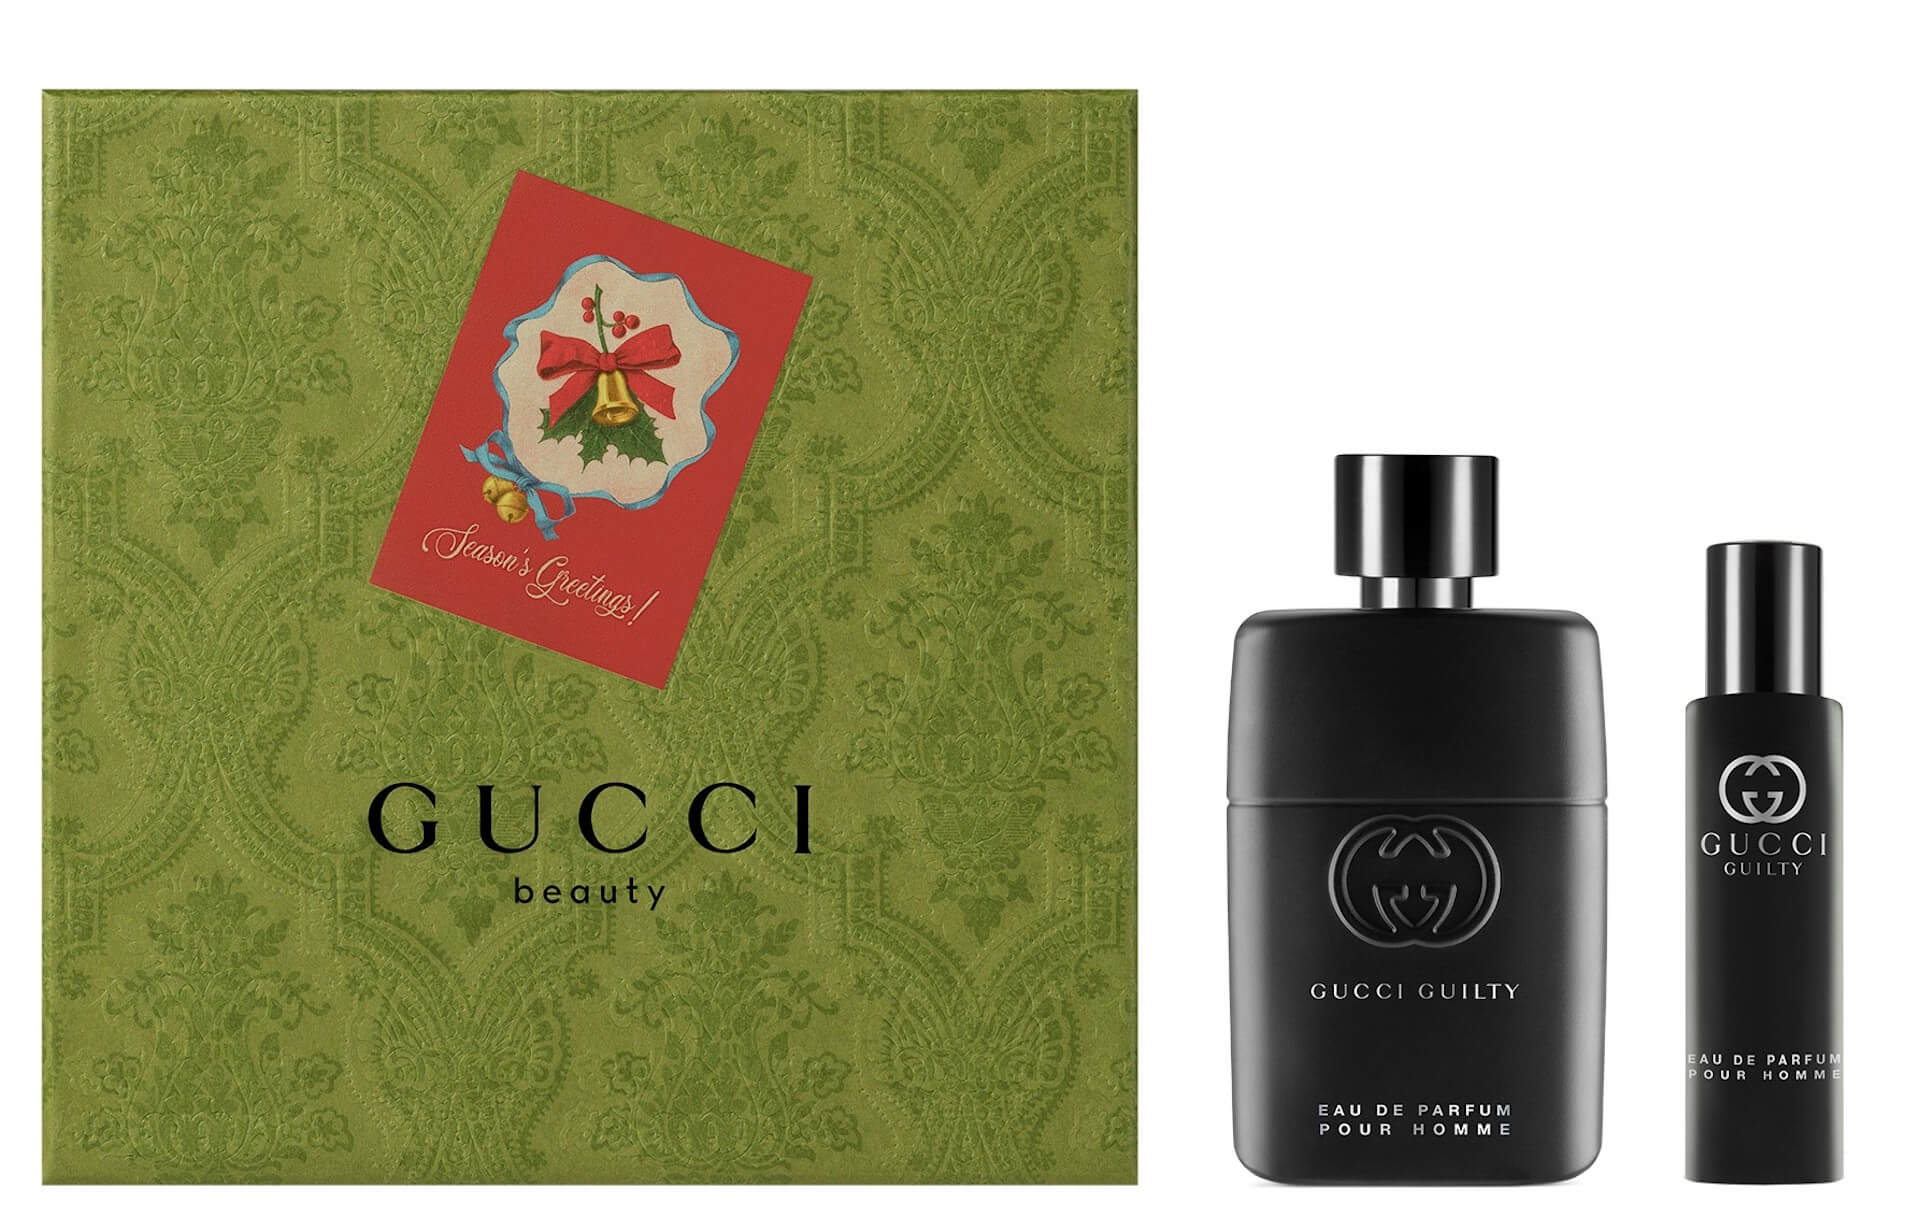 gucci_parfumes